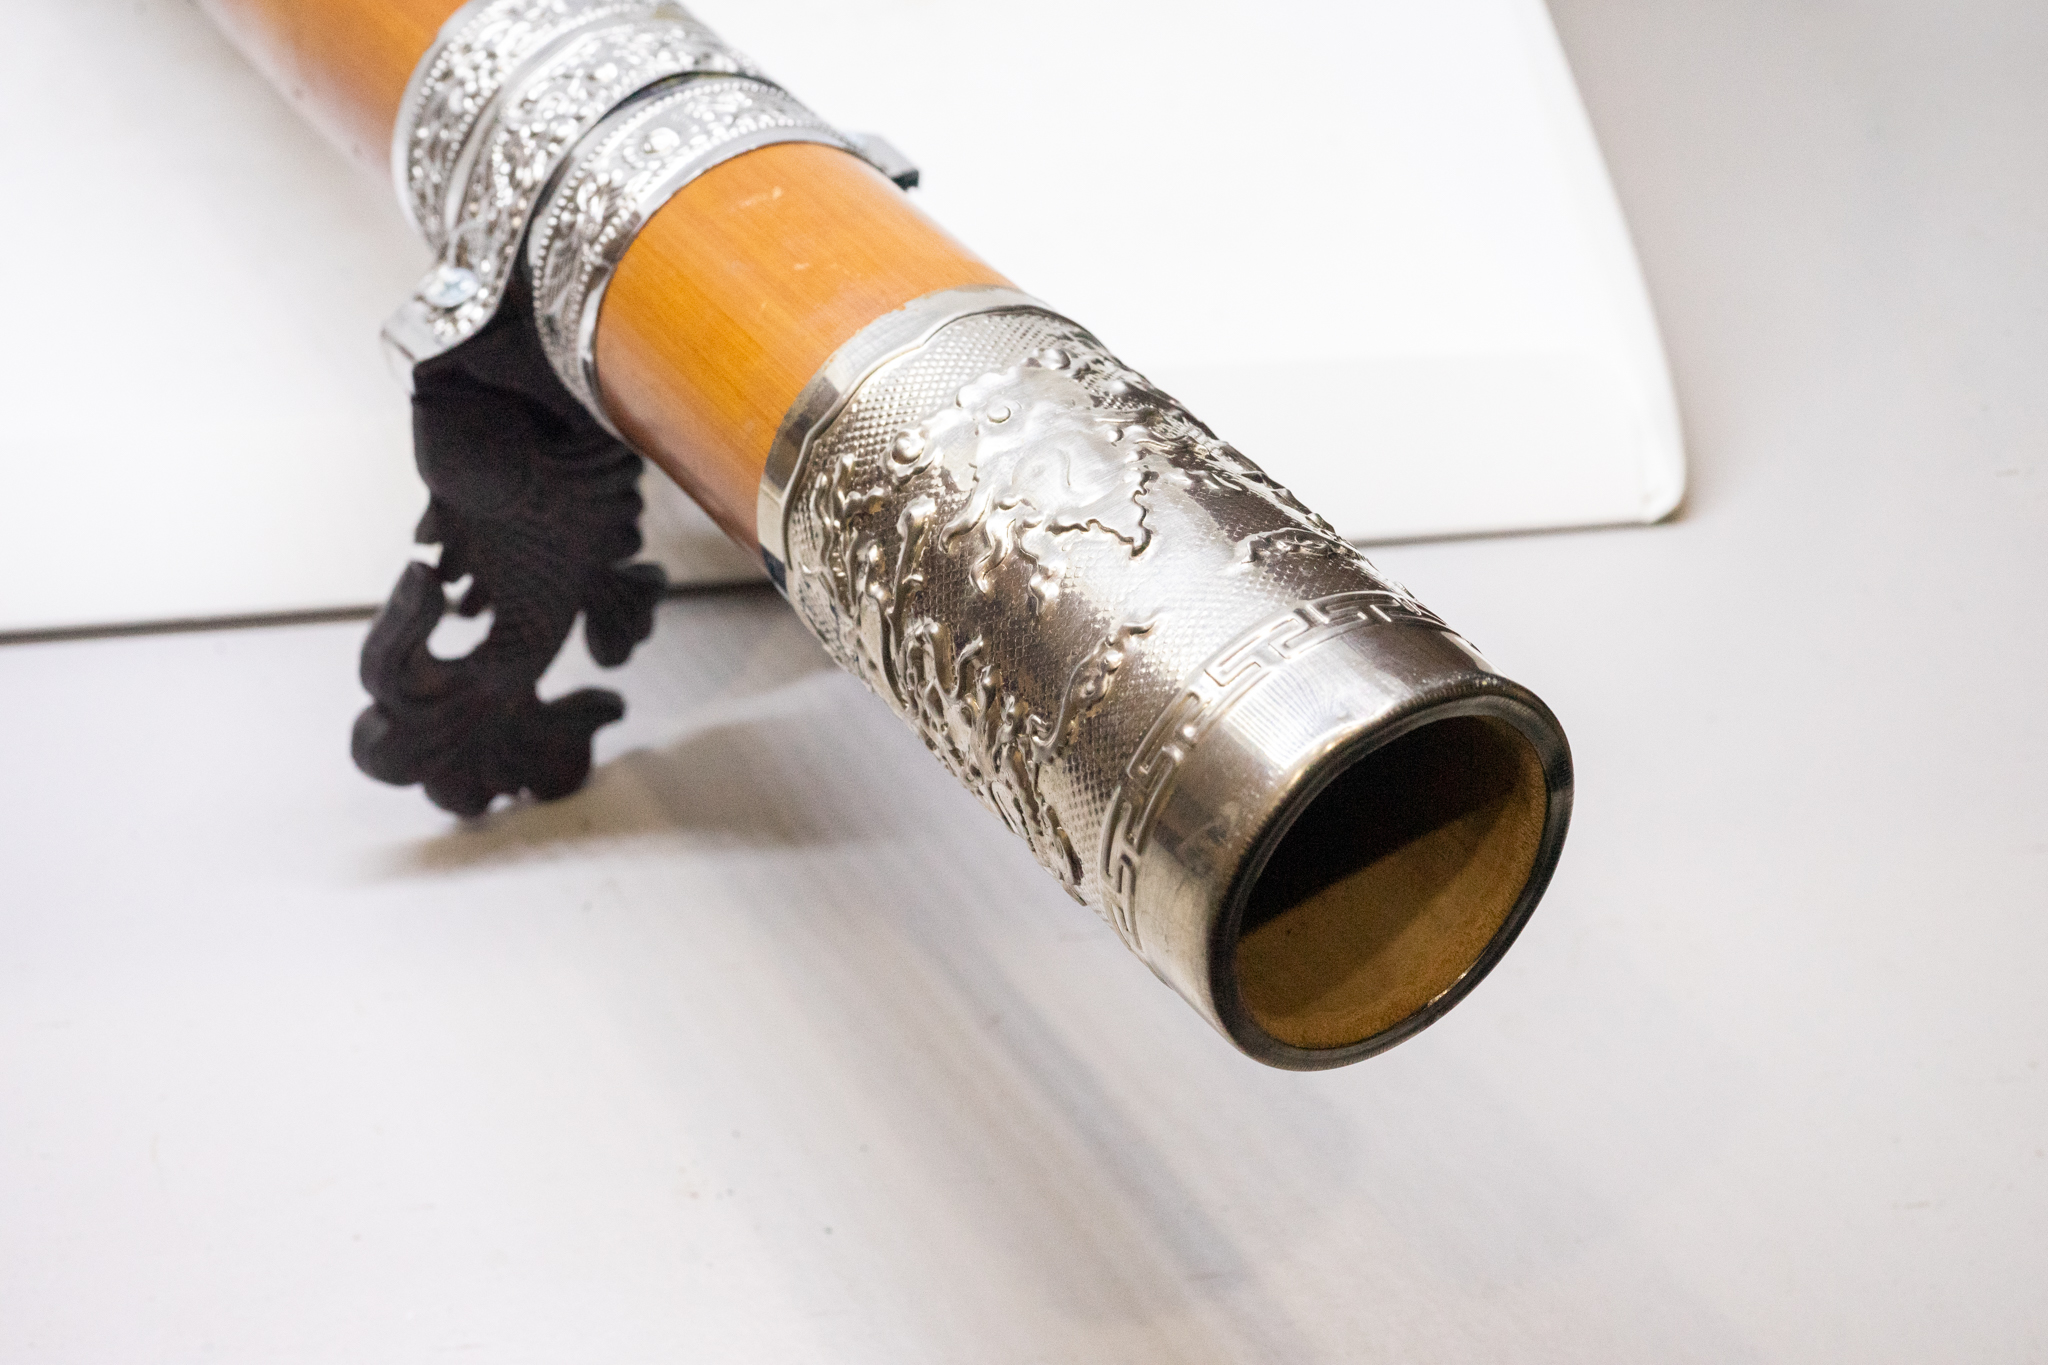 Điếu cày hút thuốc bằng tre bọc bạc với chân điếu họa tiết cá chép và nõ điếu từ gỗ trắc